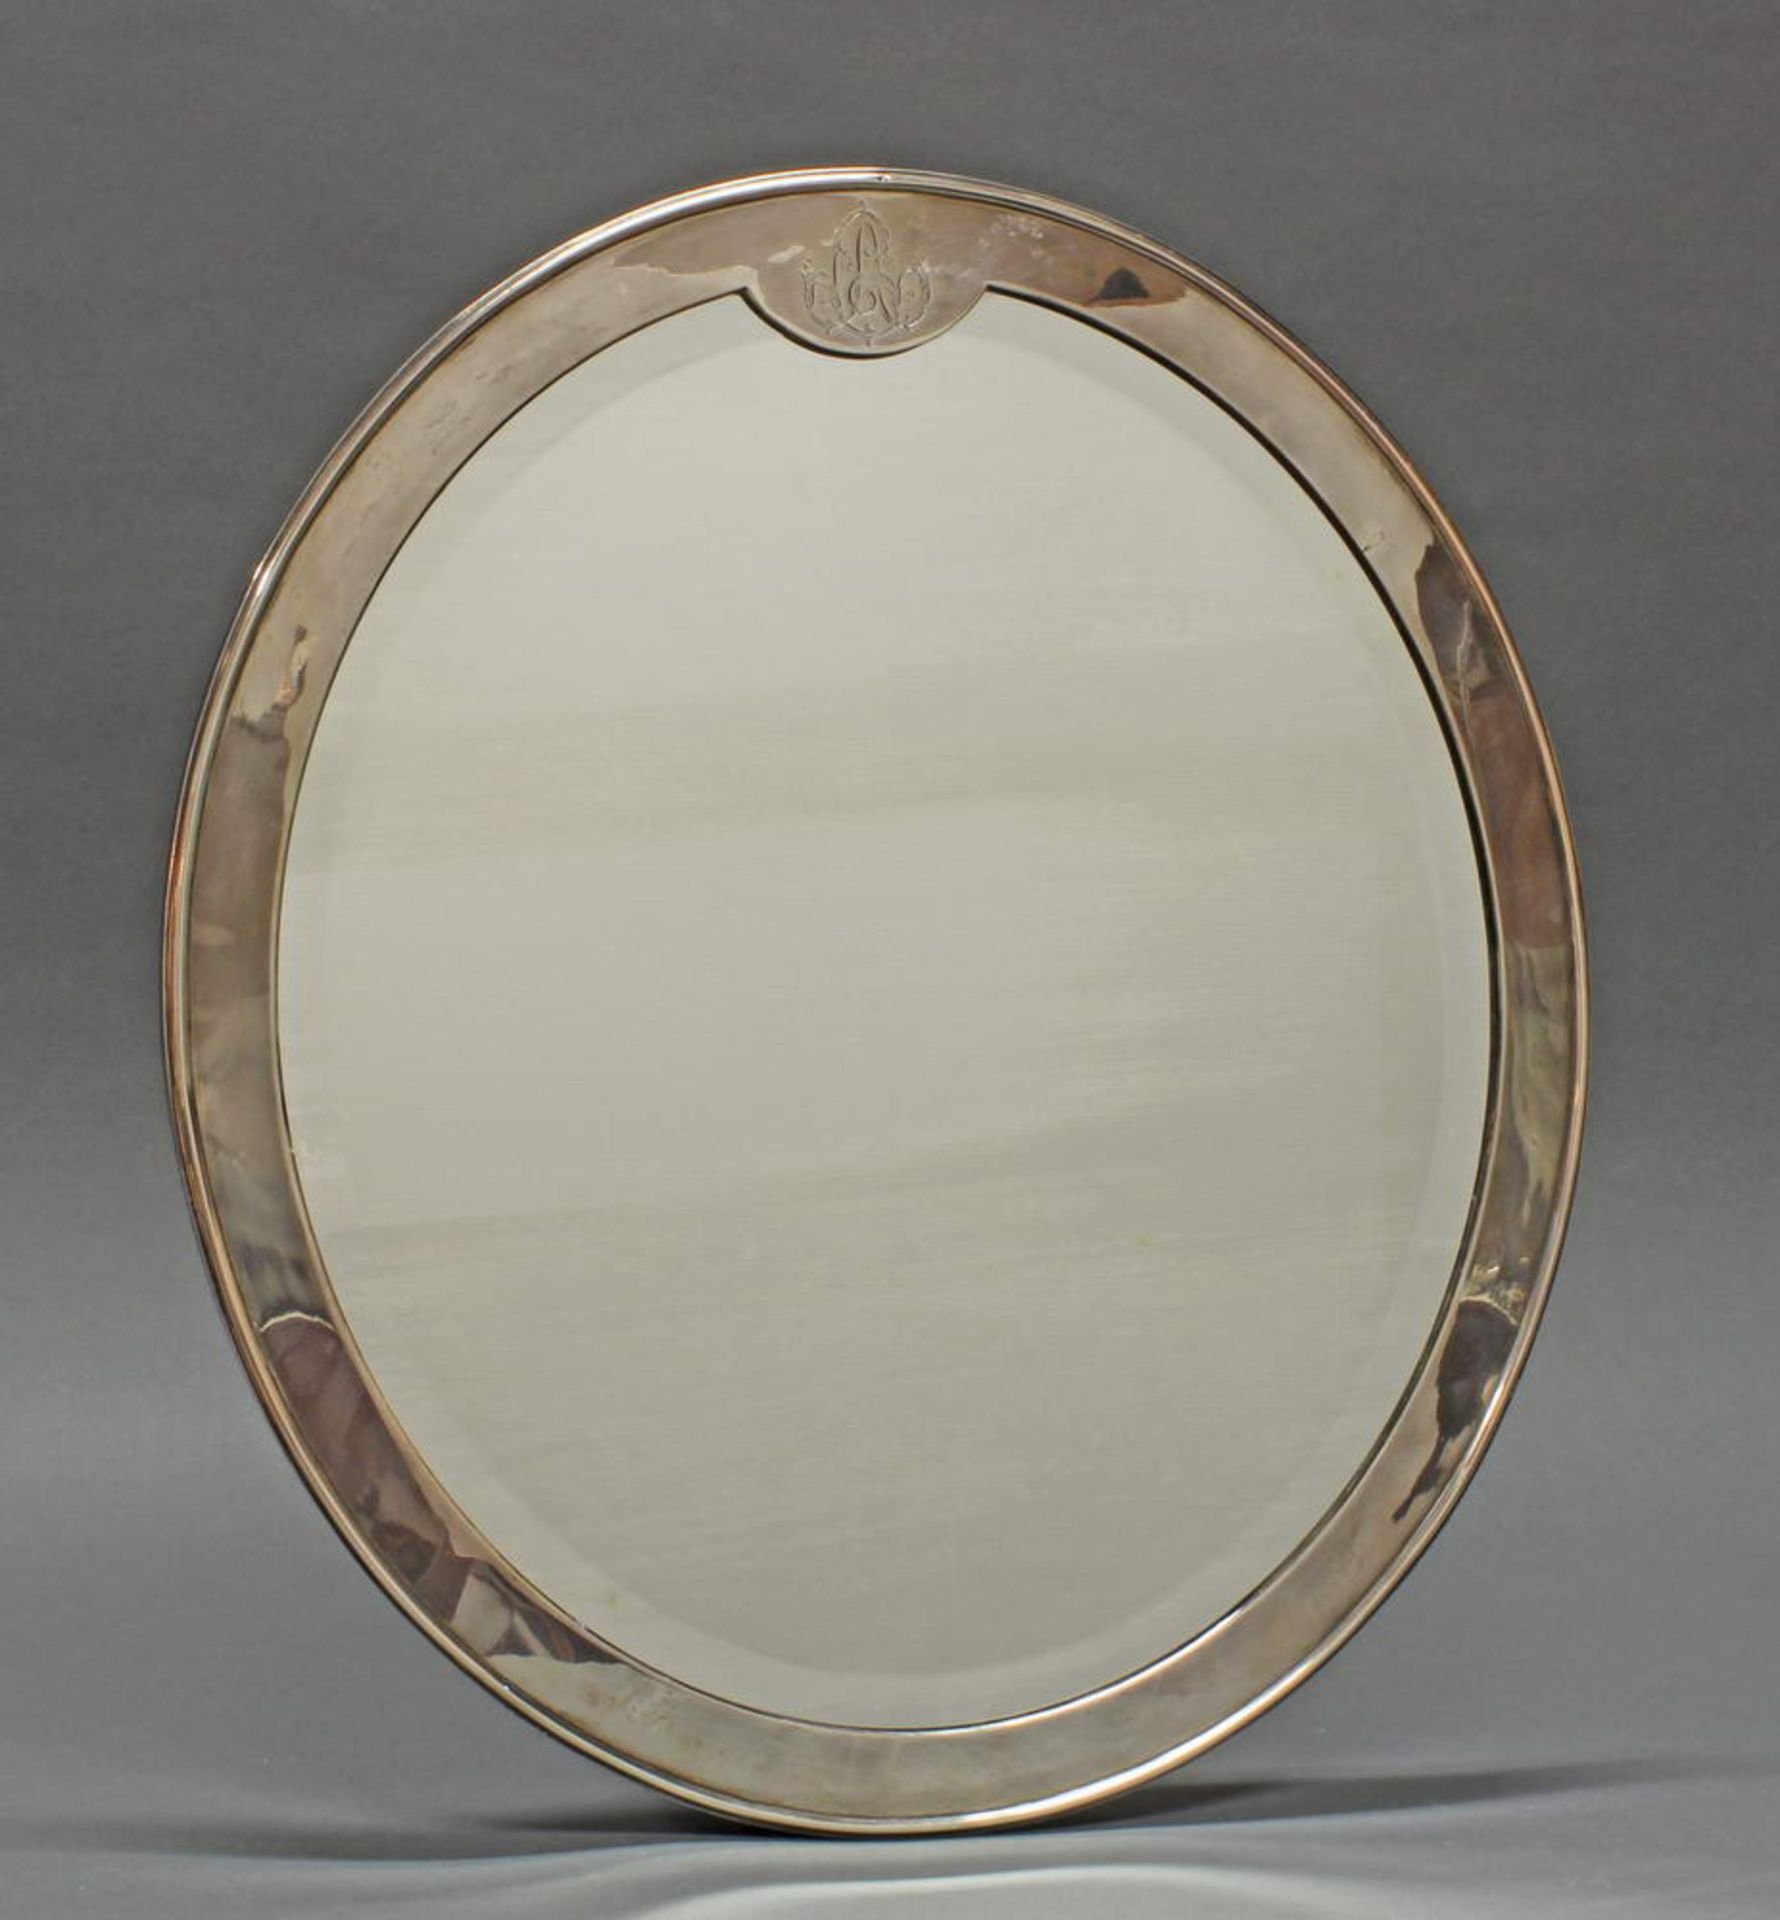 Tischspiegel, Silber, Anfang 20. Jh., oval, Monogrammgravur, Spiegelglas mit Facette, Rückseite